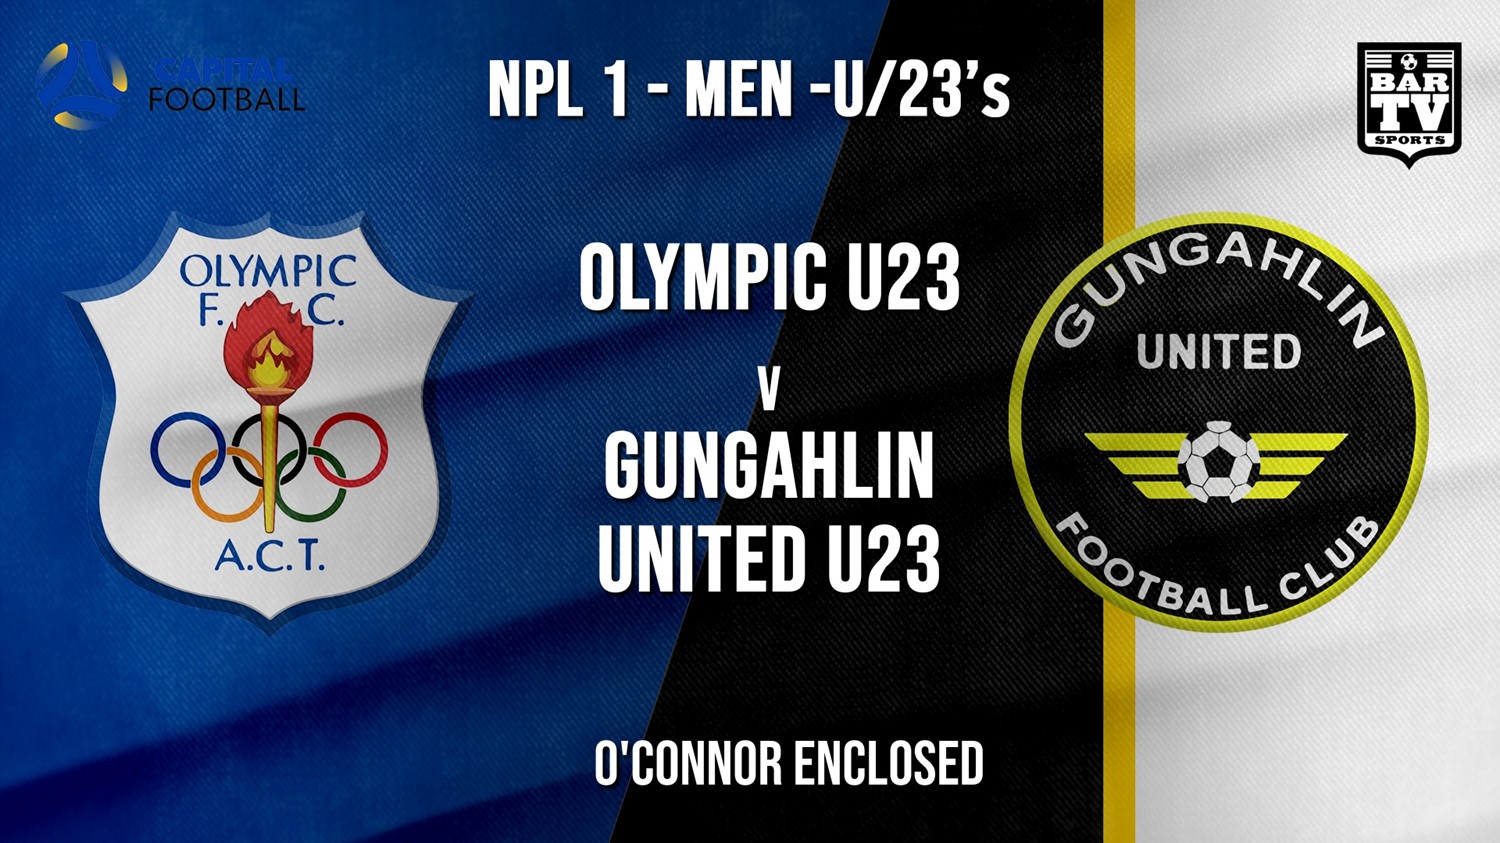 NPL1 Men - U23 - Capital Football  Canberra Olympic U23 v Gungahlin United U23 Minigame Slate Image